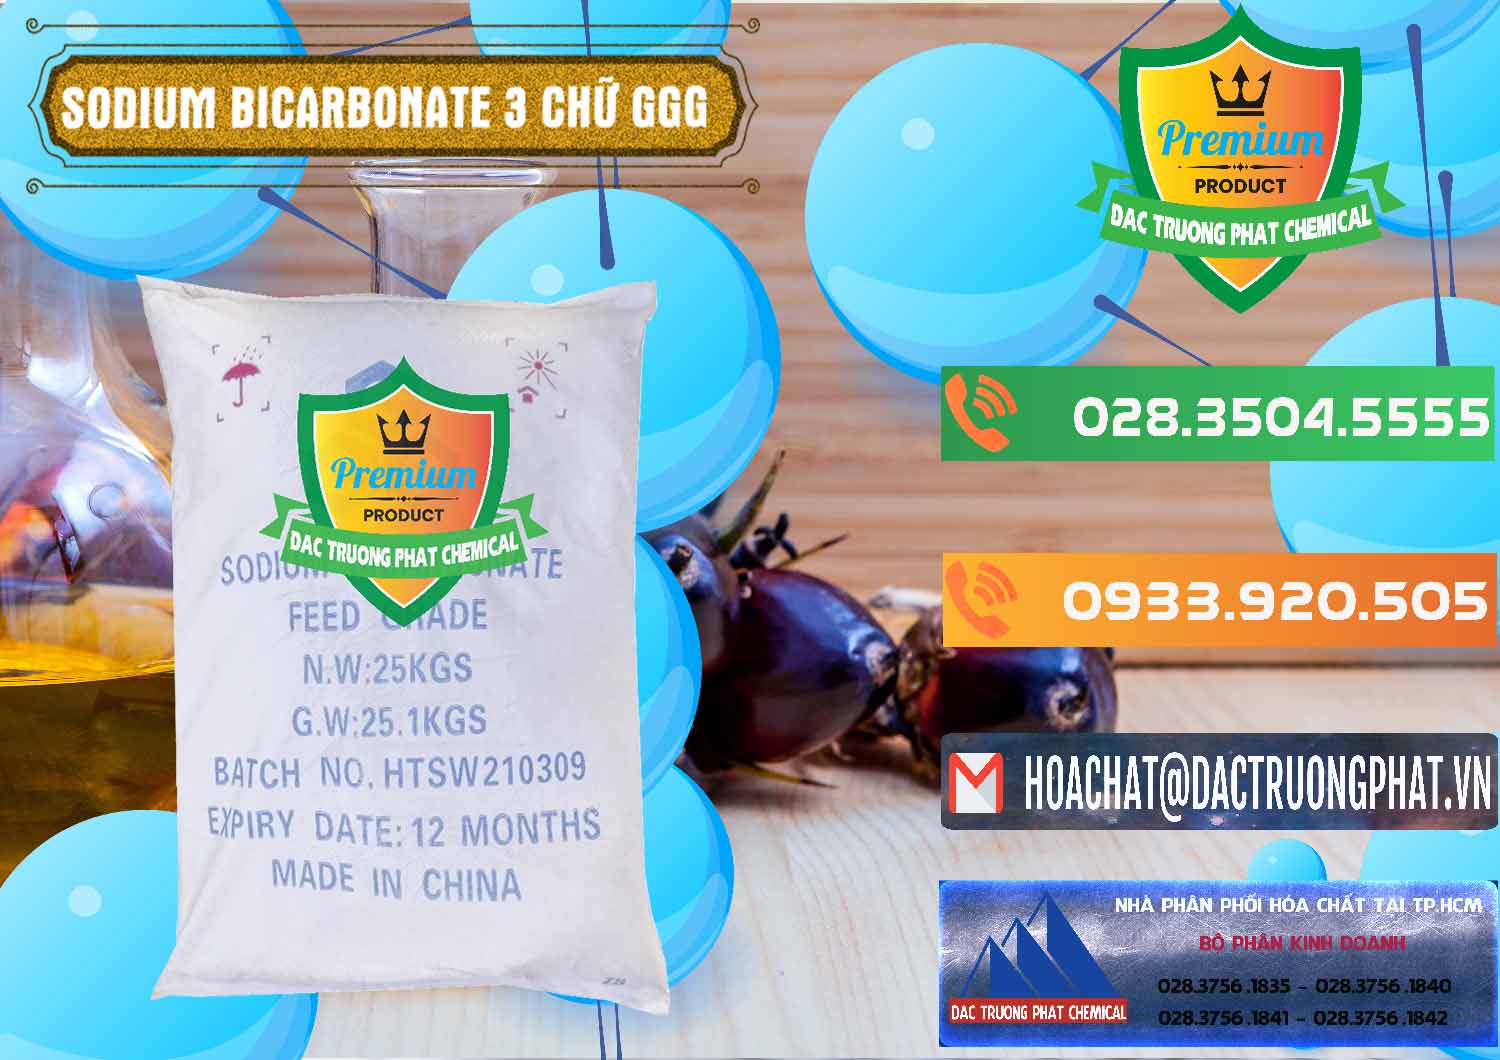 Cty kinh doanh & bán Sodium Bicarbonate – Bicar NaHCO3 Food Grade 3 Chữ GGG Trung Quốc China - 0259 - Công ty chuyên cung cấp & bán hóa chất tại TP.HCM - hoachatxulynuoc.com.vn